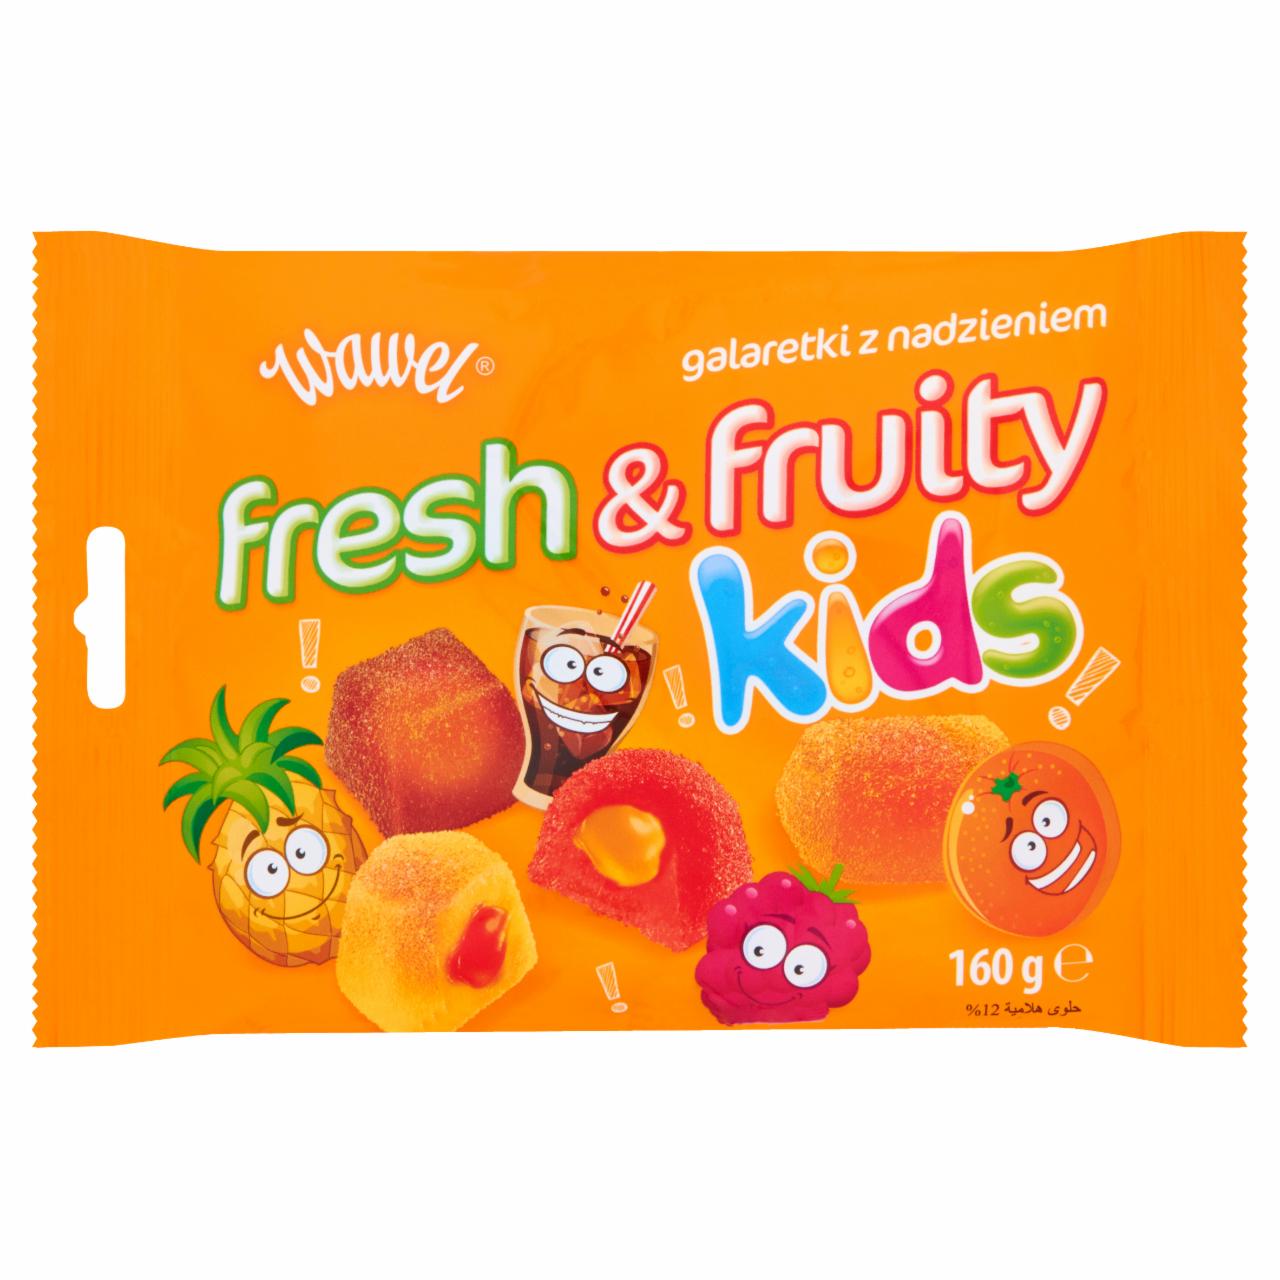 Zdjęcia - Wawel Fresh & Fruity Kids Galaretki z nadzieniem 160 g